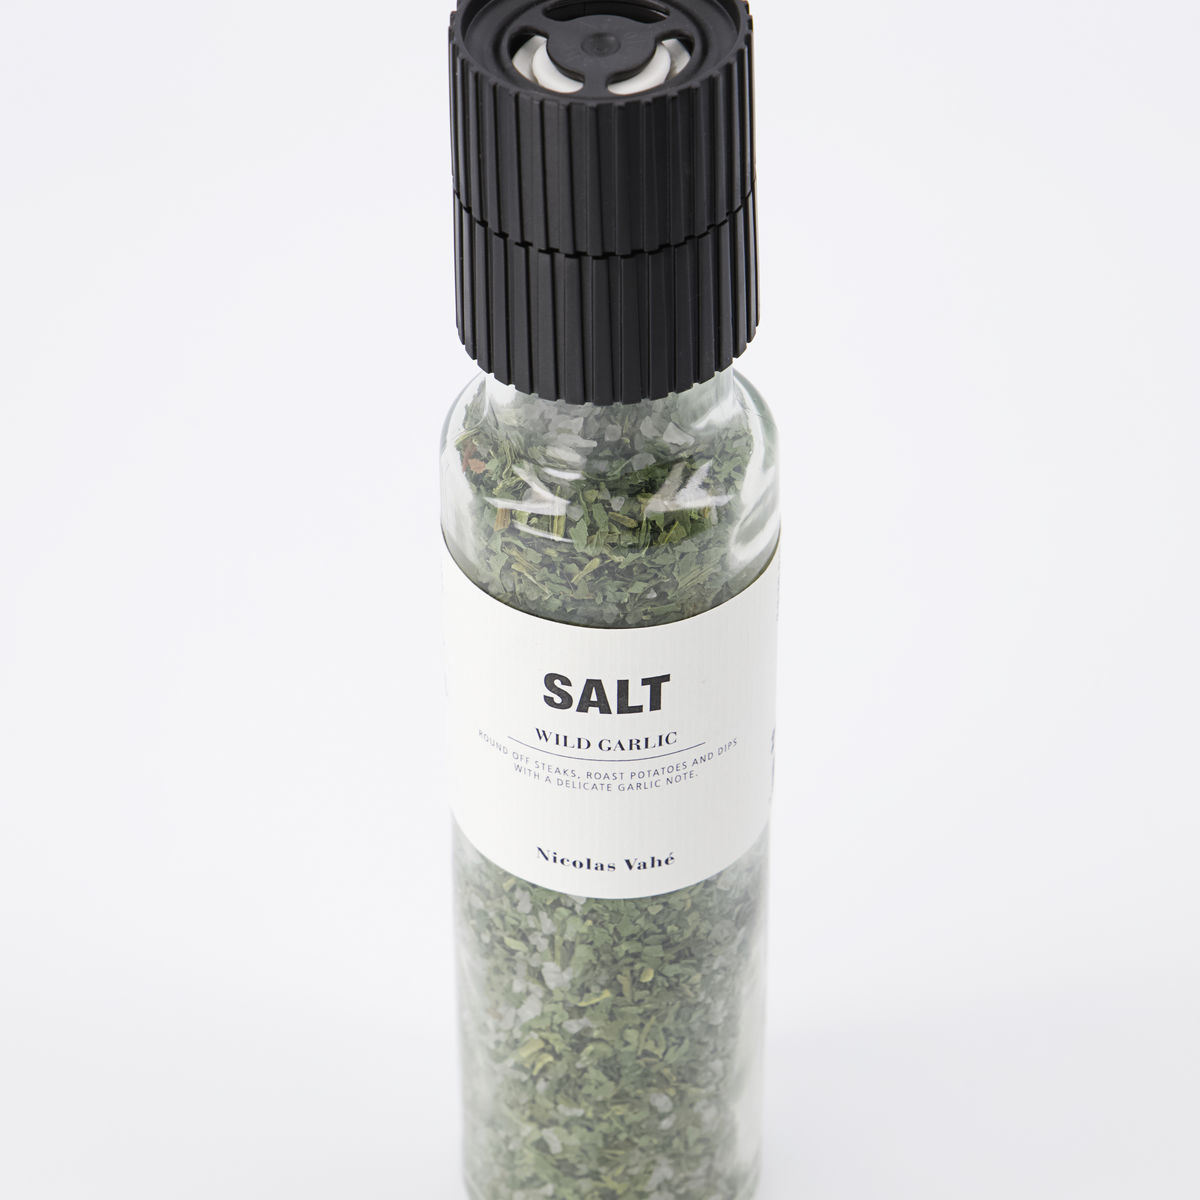 Nicolas Vahé Salt, wild garlic